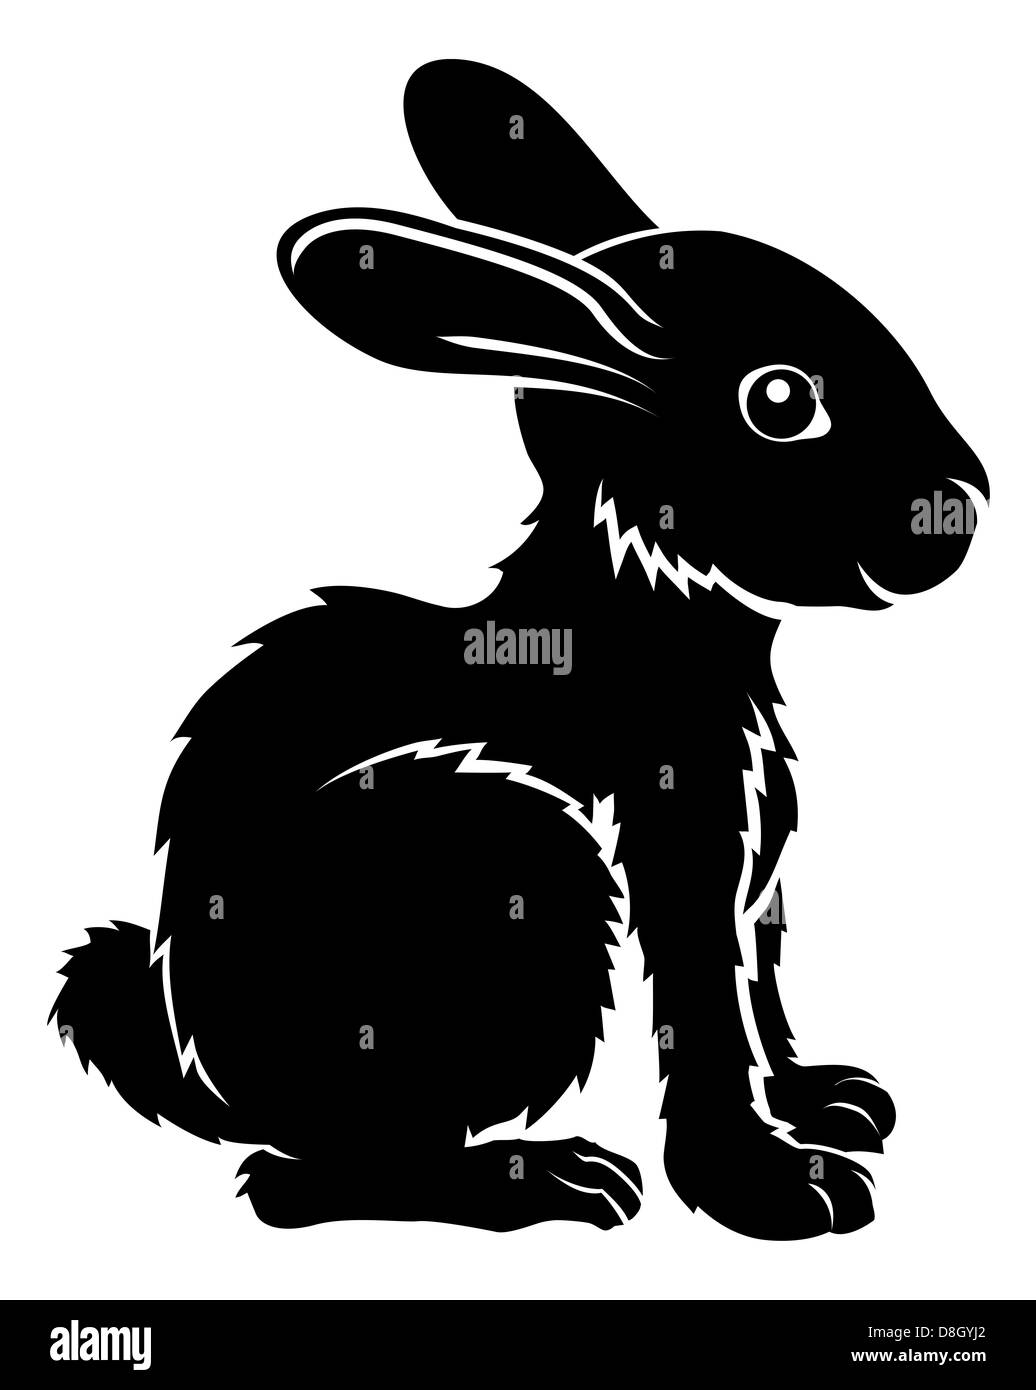 Una illustrazione di un coniglio stilizzato forse un tatuaggio di coniglio Foto Stock